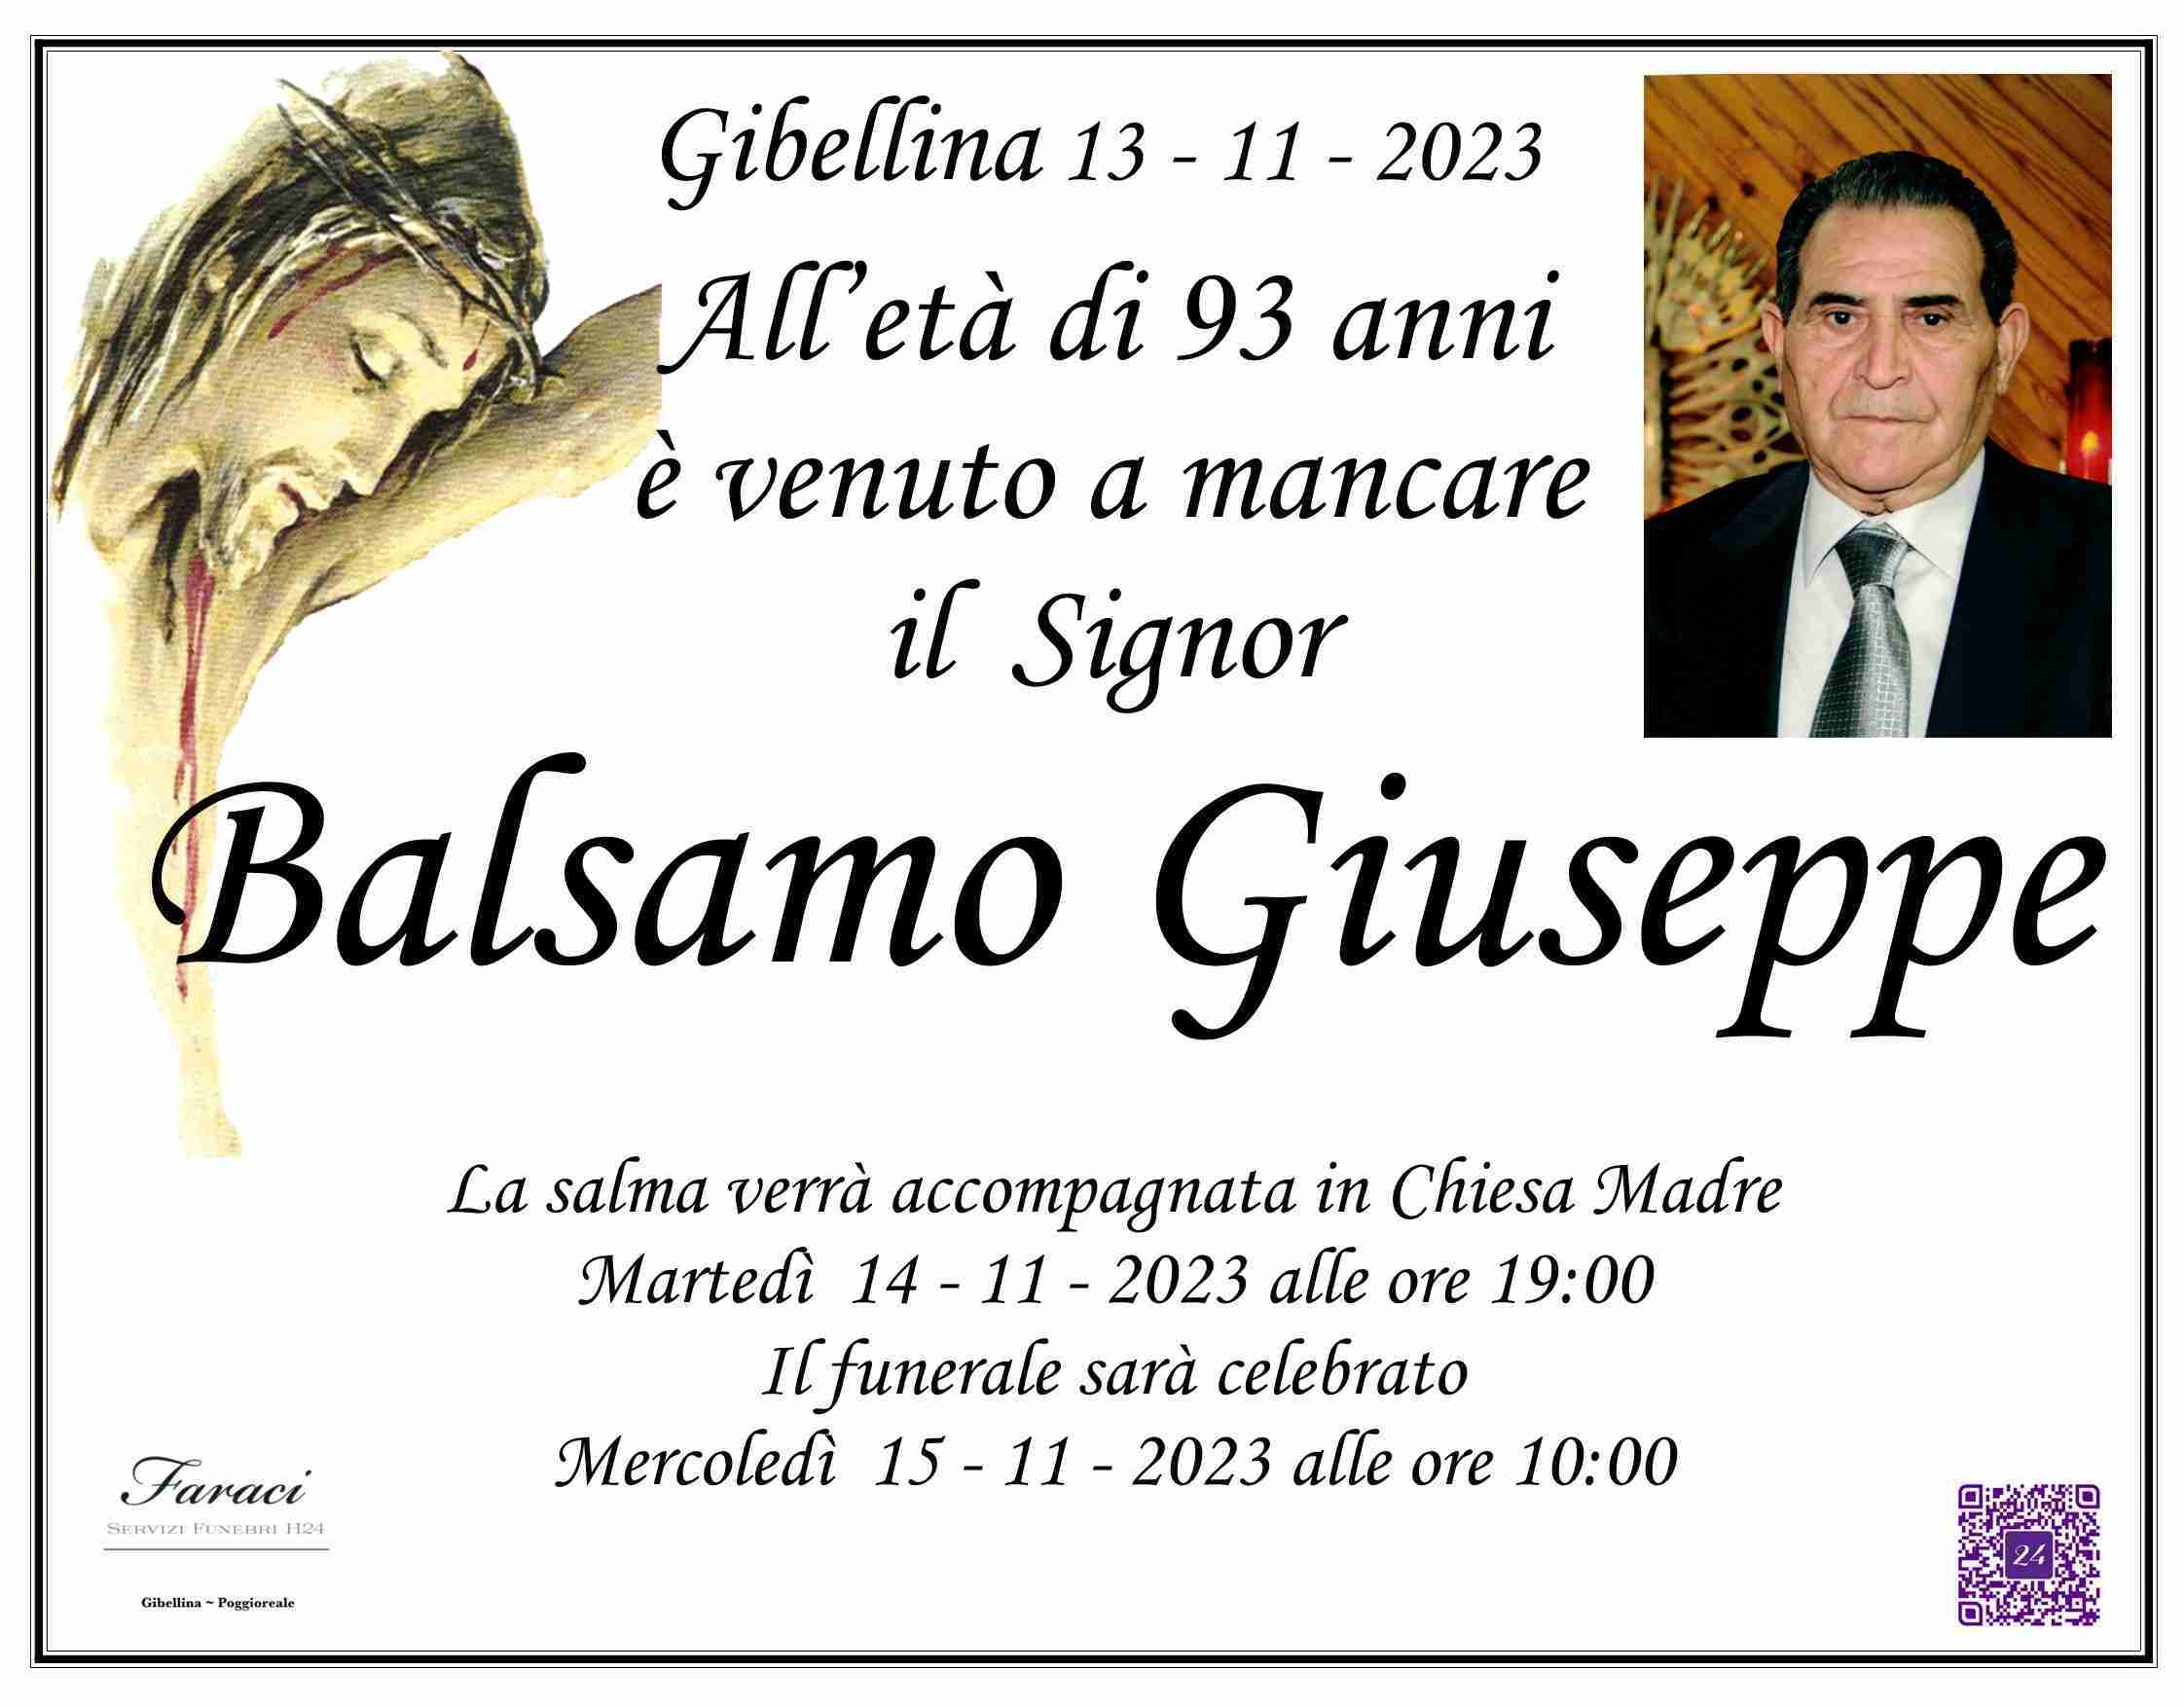 Giuseppe Balsamo